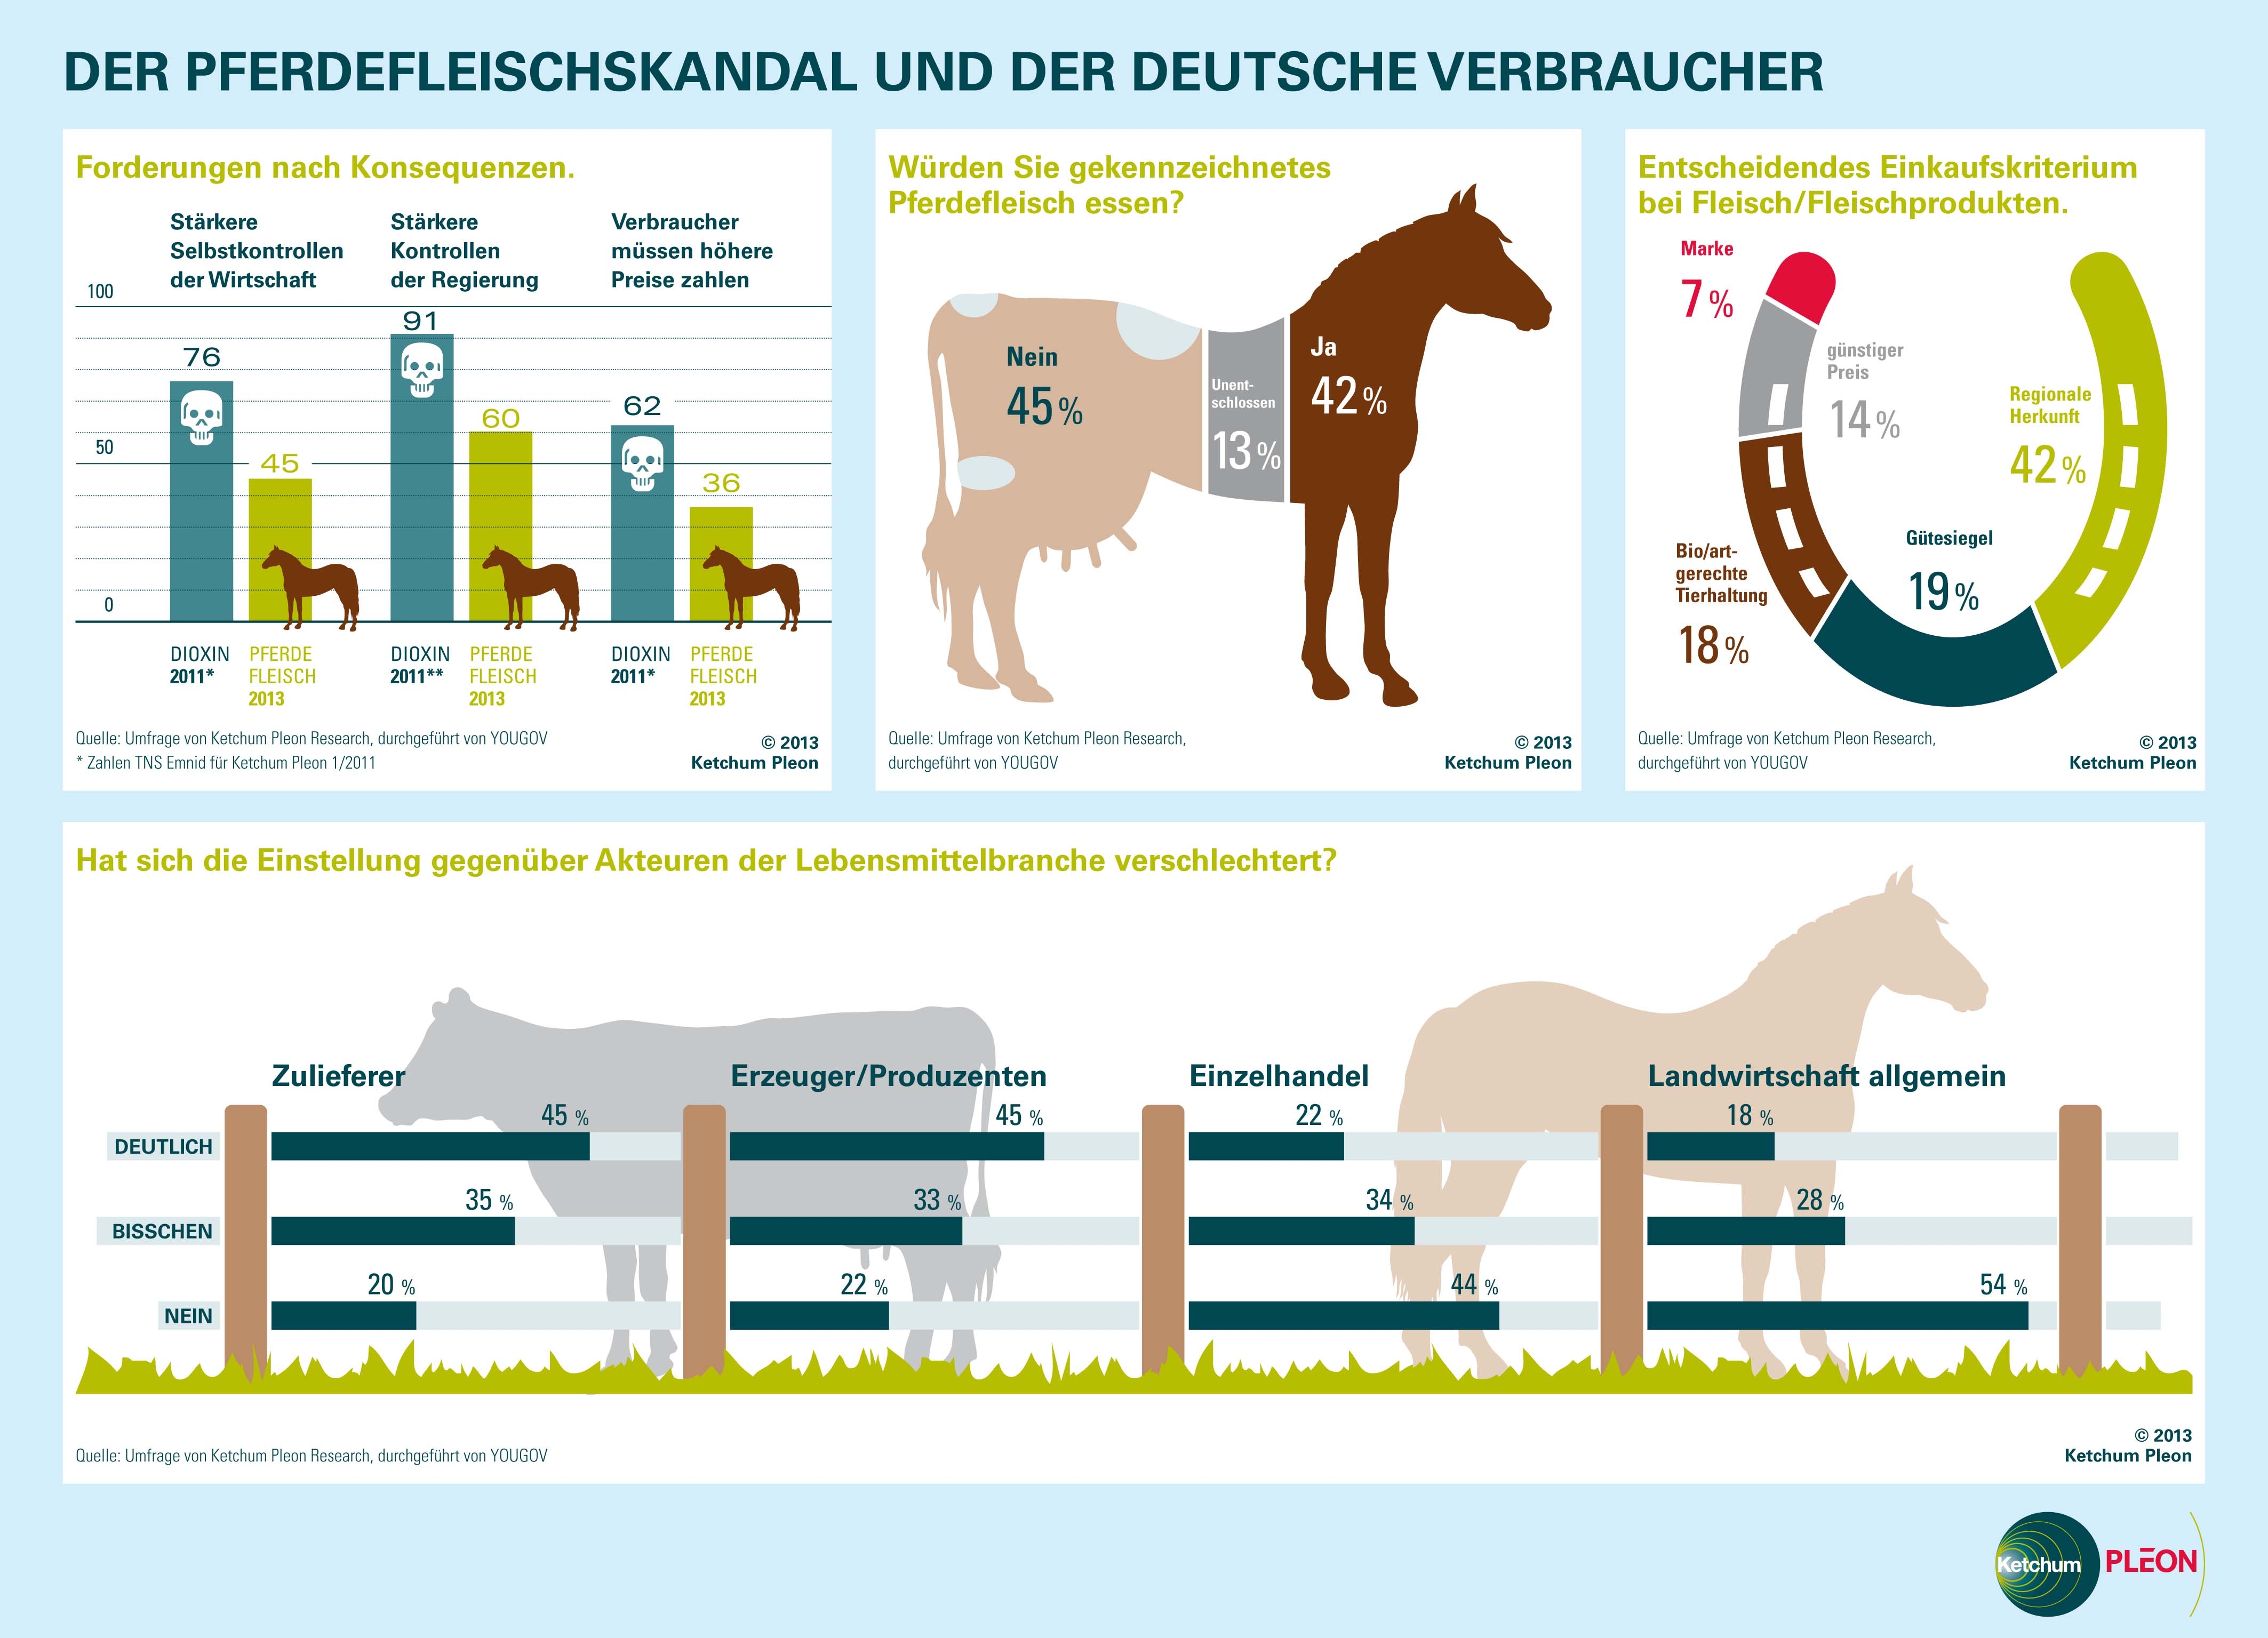 Pferdefleisch - Über die Hälfte der Verbraucher fühlen sich von Industrie wissentlich getäuscht